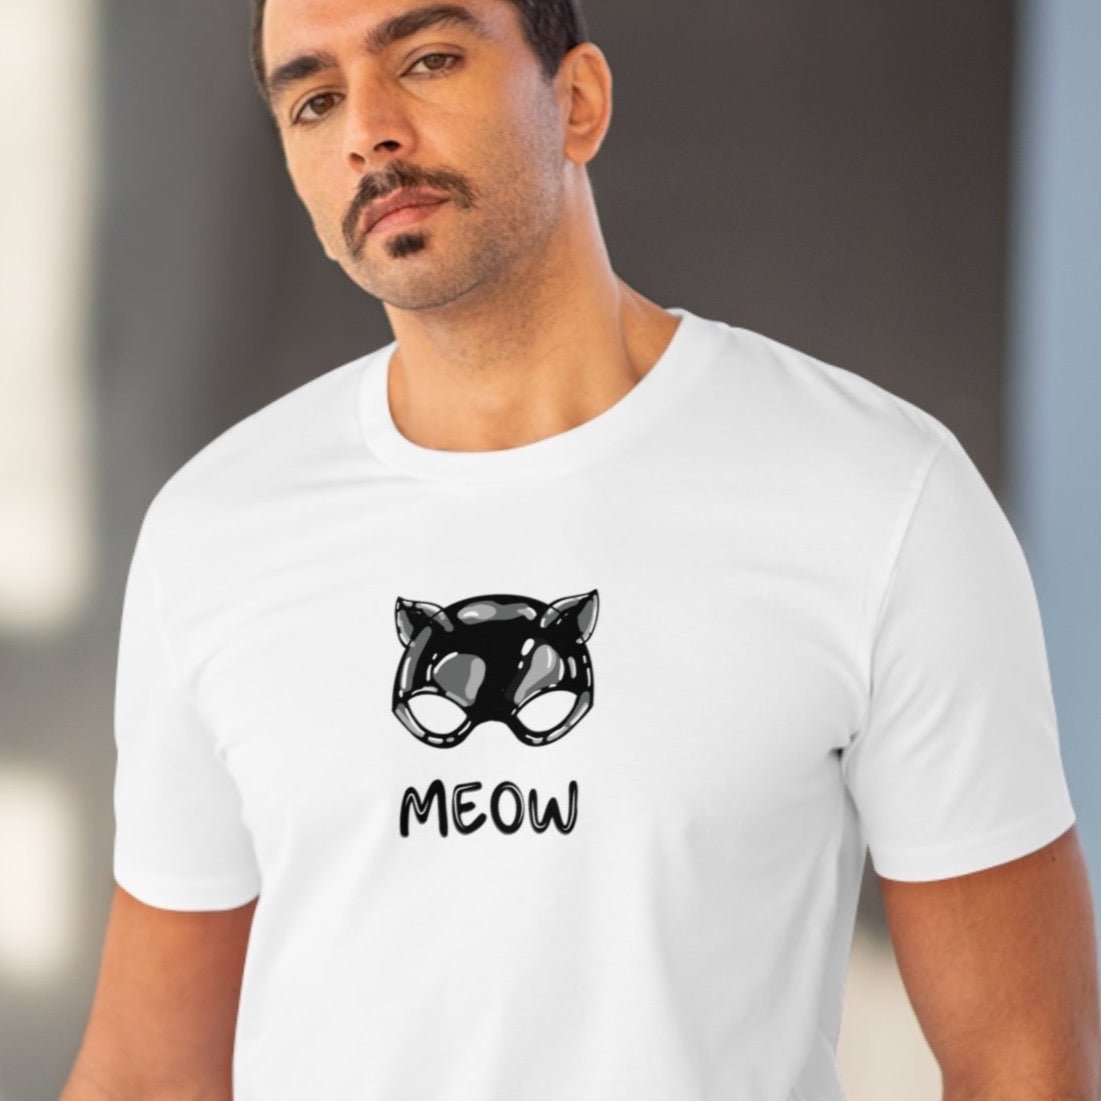 Organic Cotton 'Meow' Funny Cat T-shirt - Fun Cat T shirt